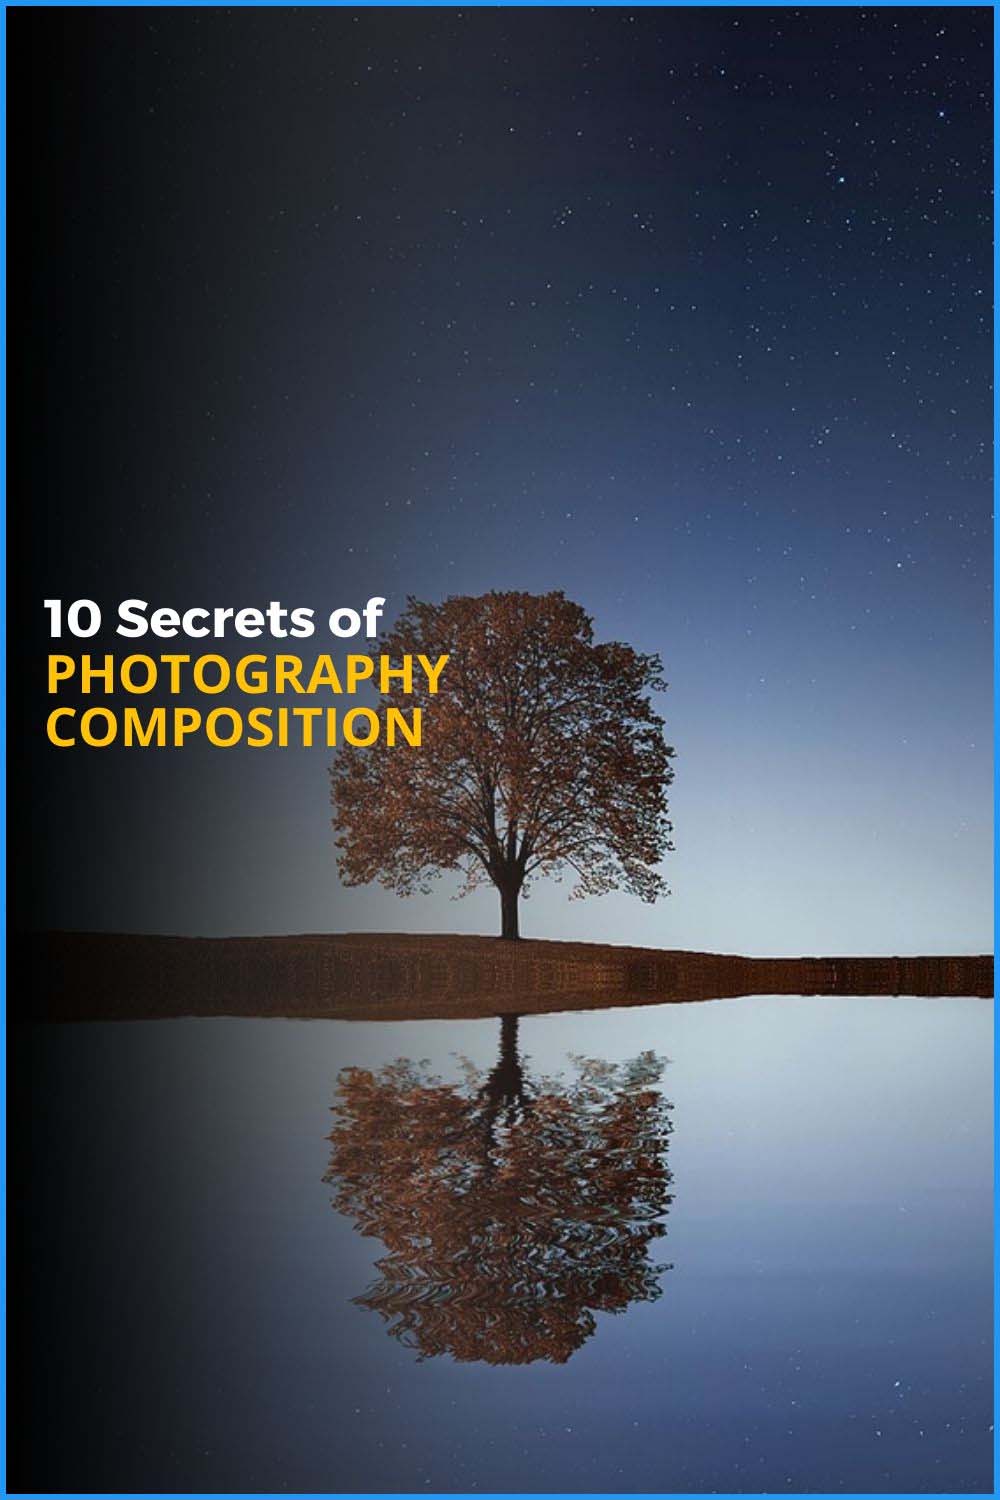 10 Secrets About Photo Composition